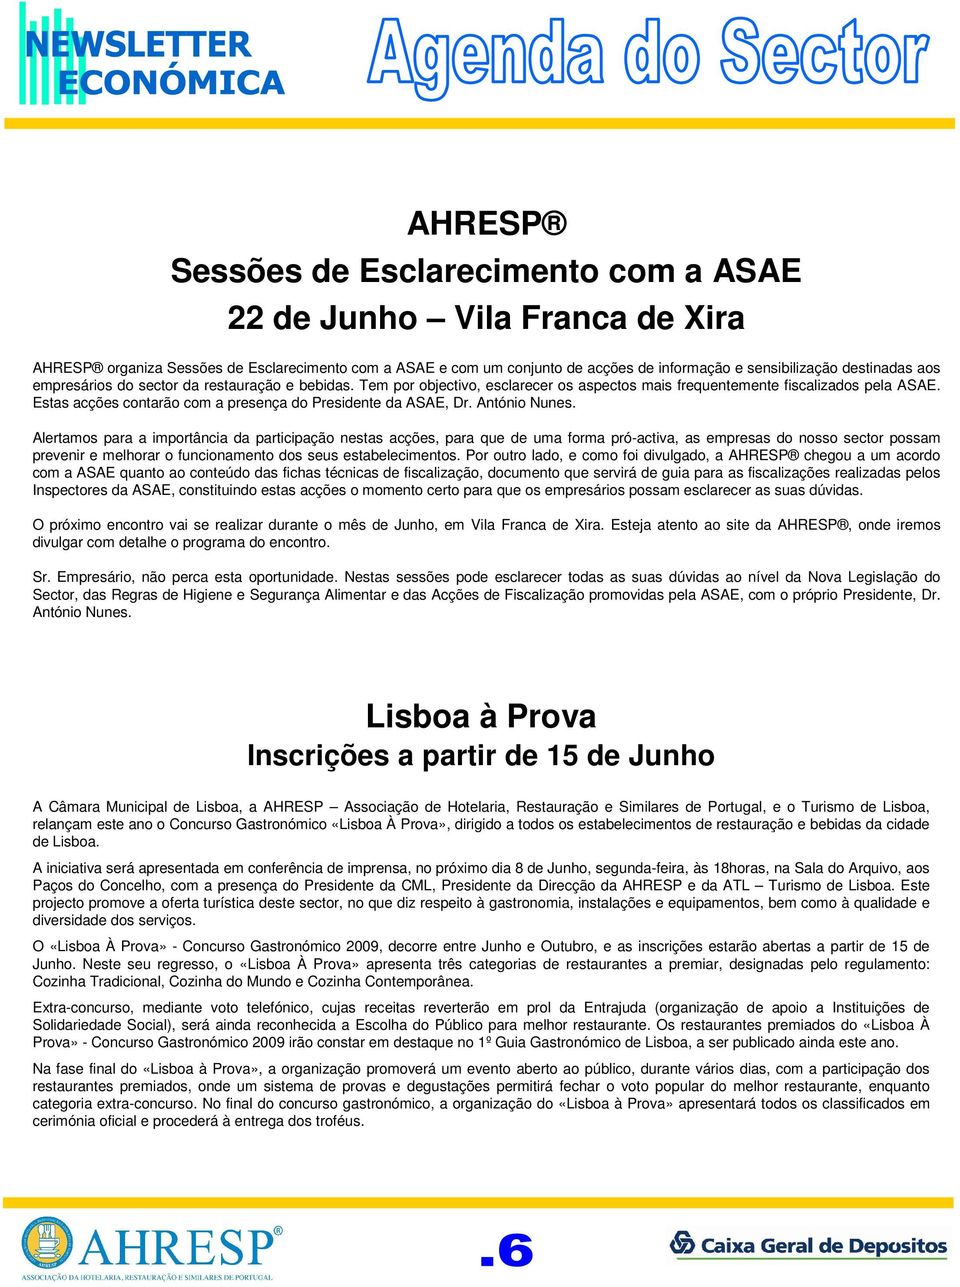 Estas acções contarão com a presença do Presidente da ASAE, Dr. António Nunes.